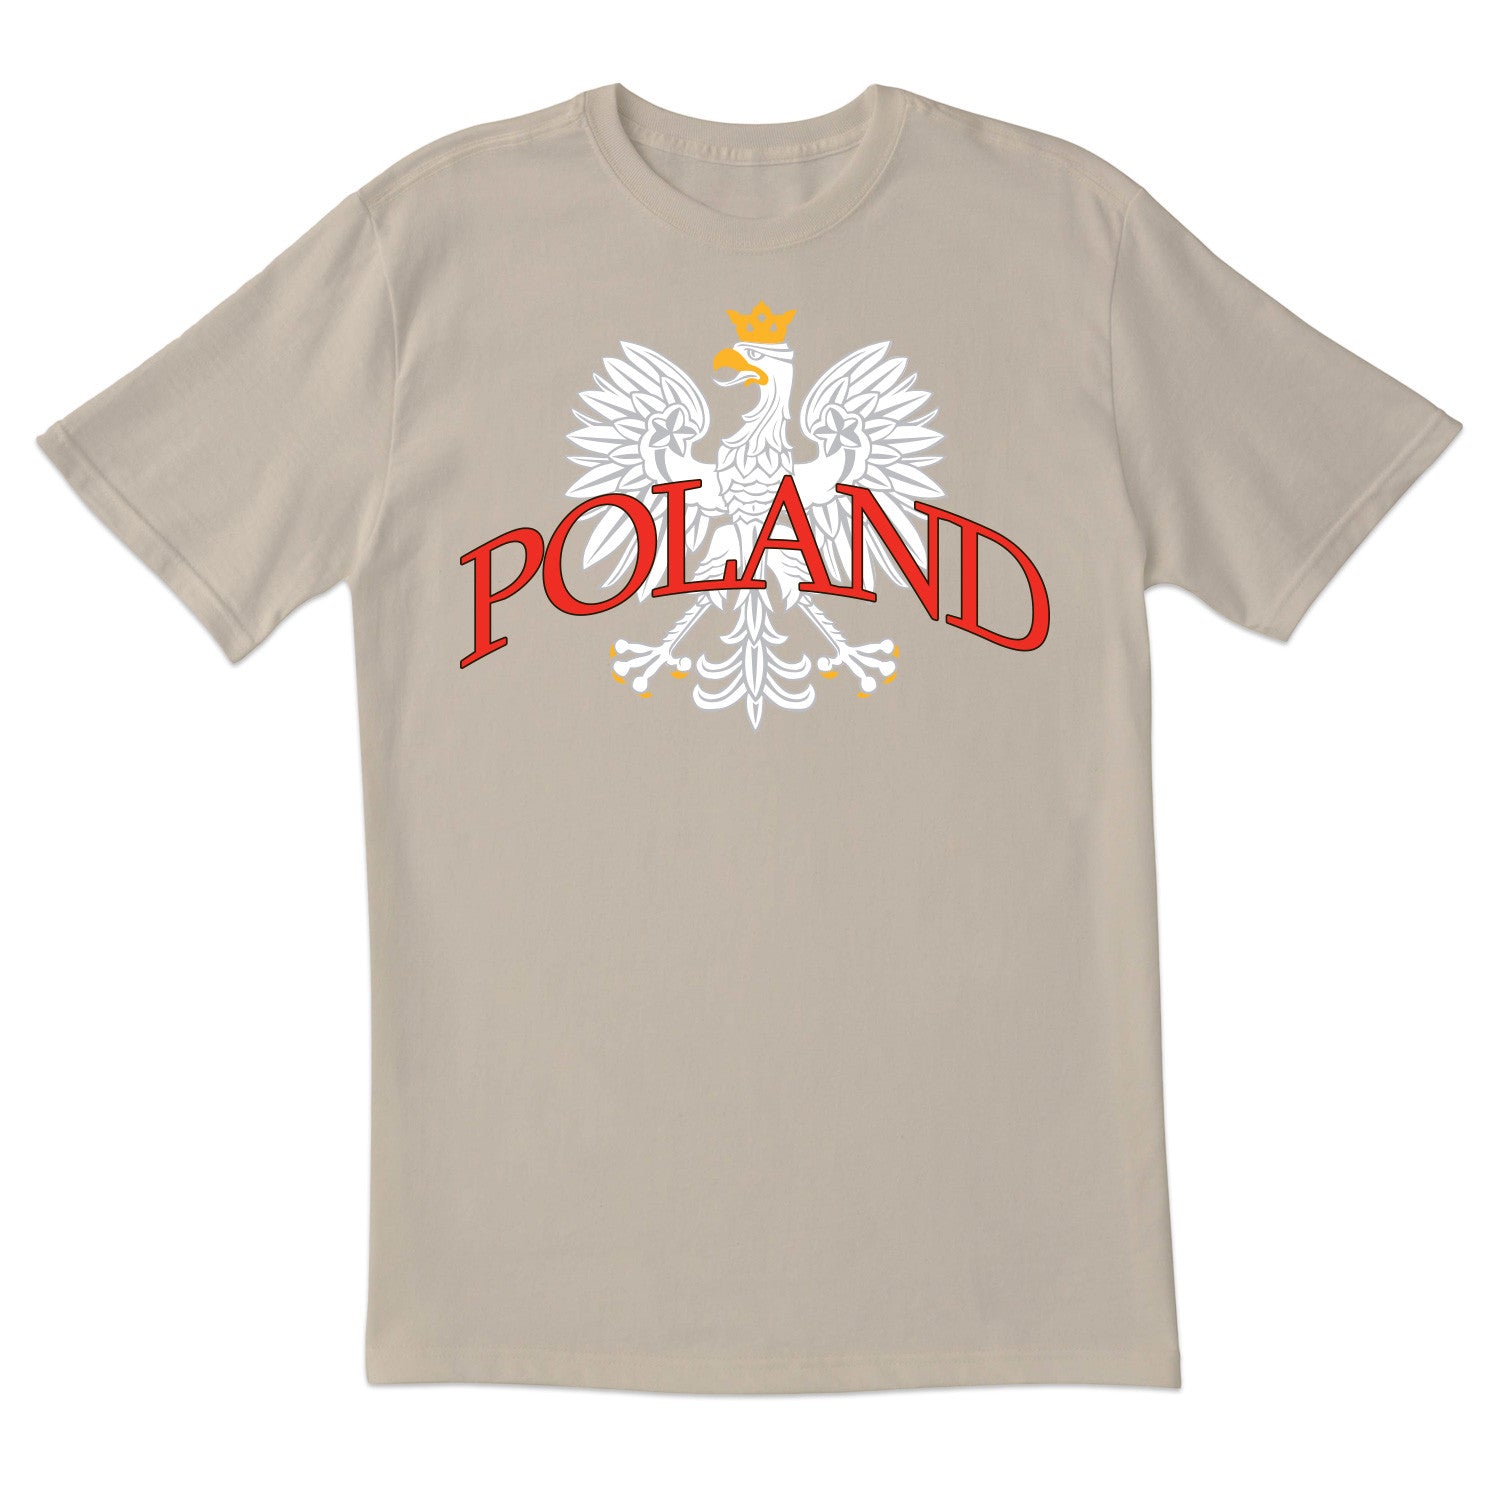 White Eagle POLAND Short Sleeve Tshirt